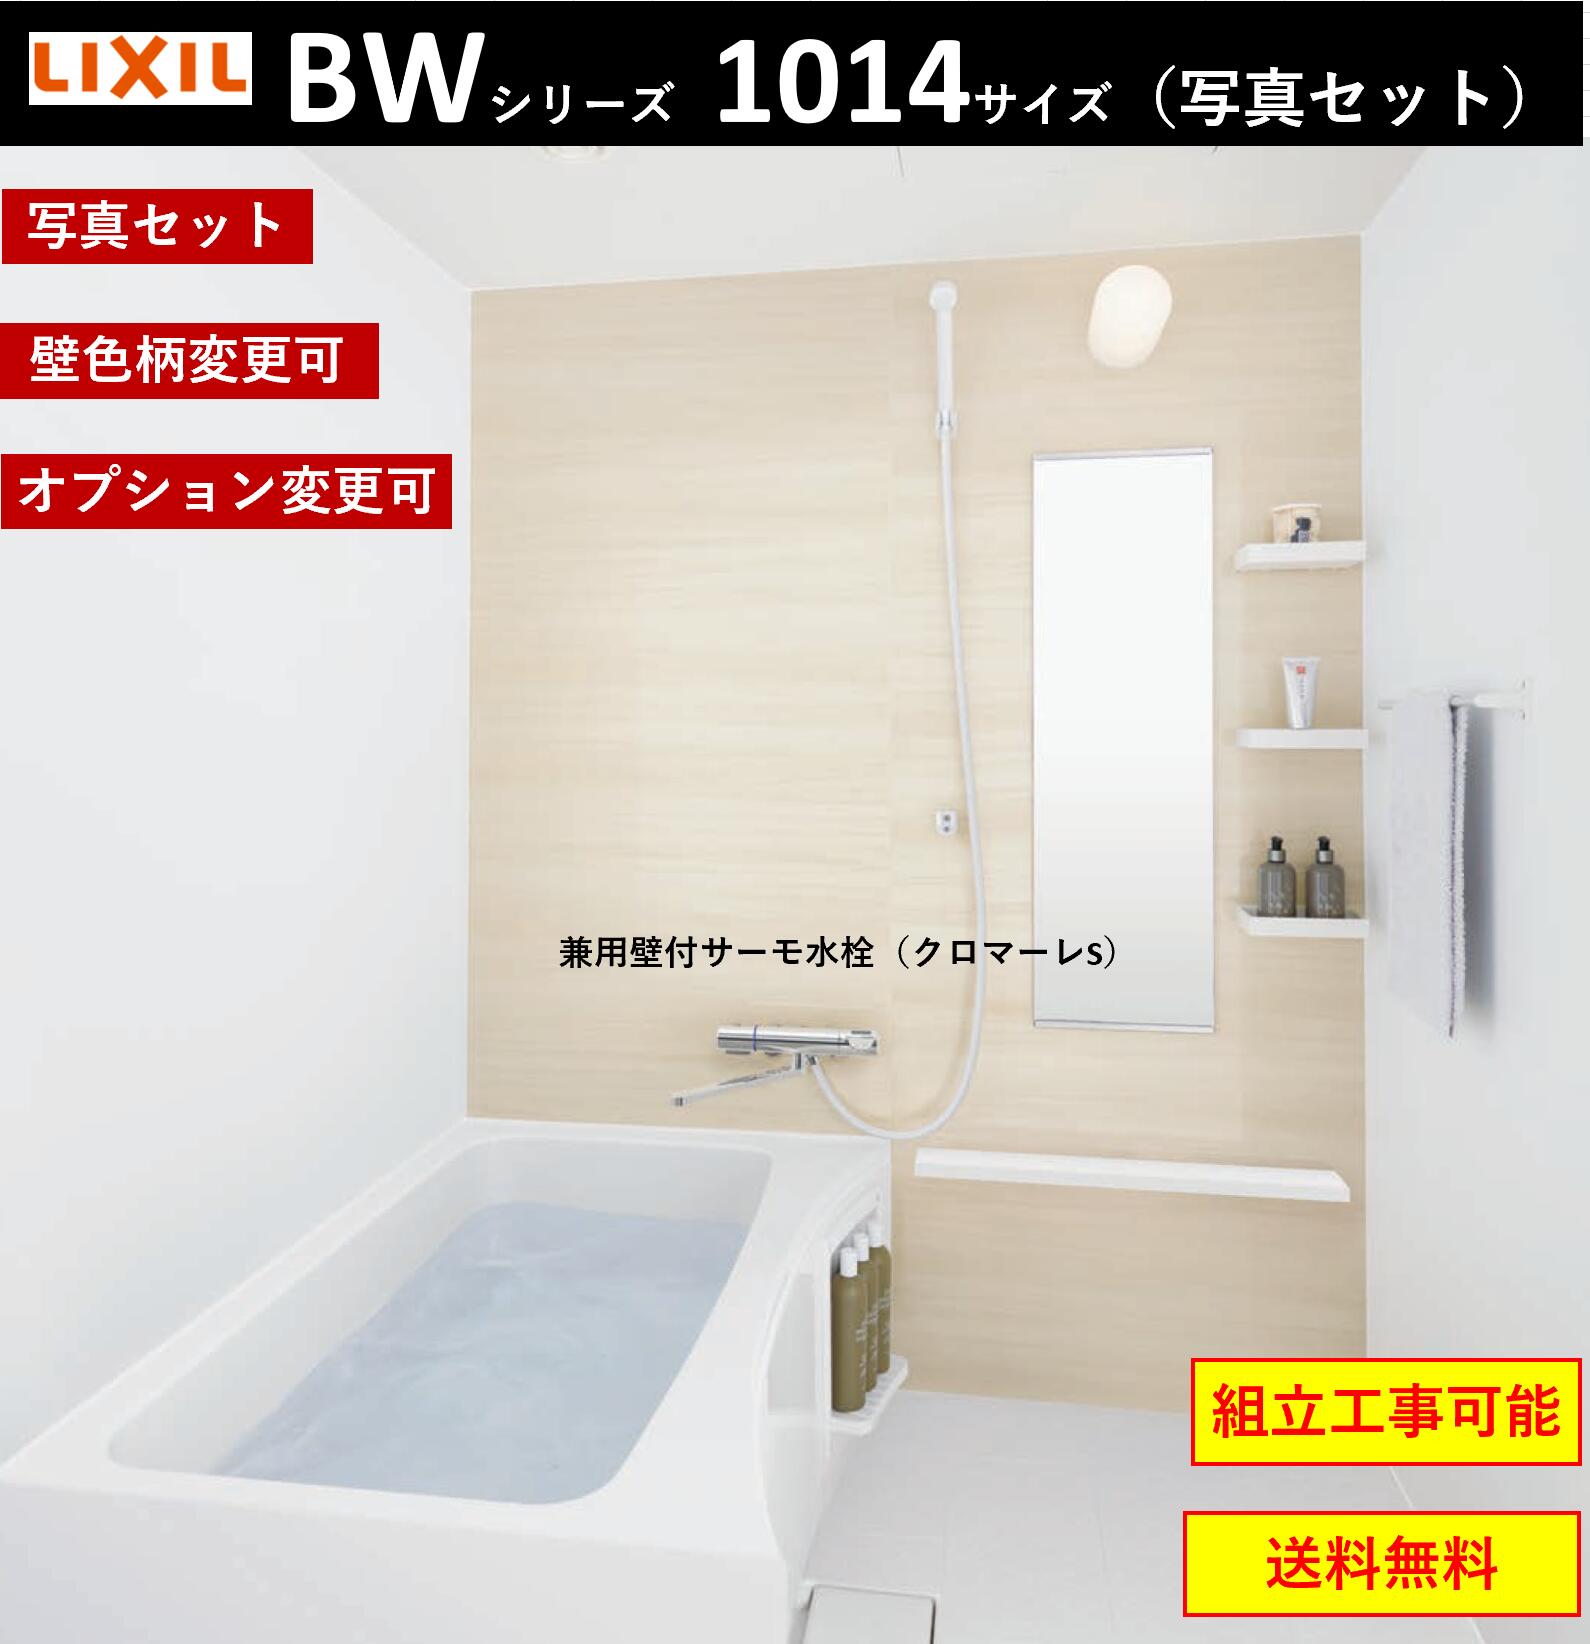 【楽天市場】LIXIL BW-1014LBE BWシリーズ 1014サイズ 集合住宅 